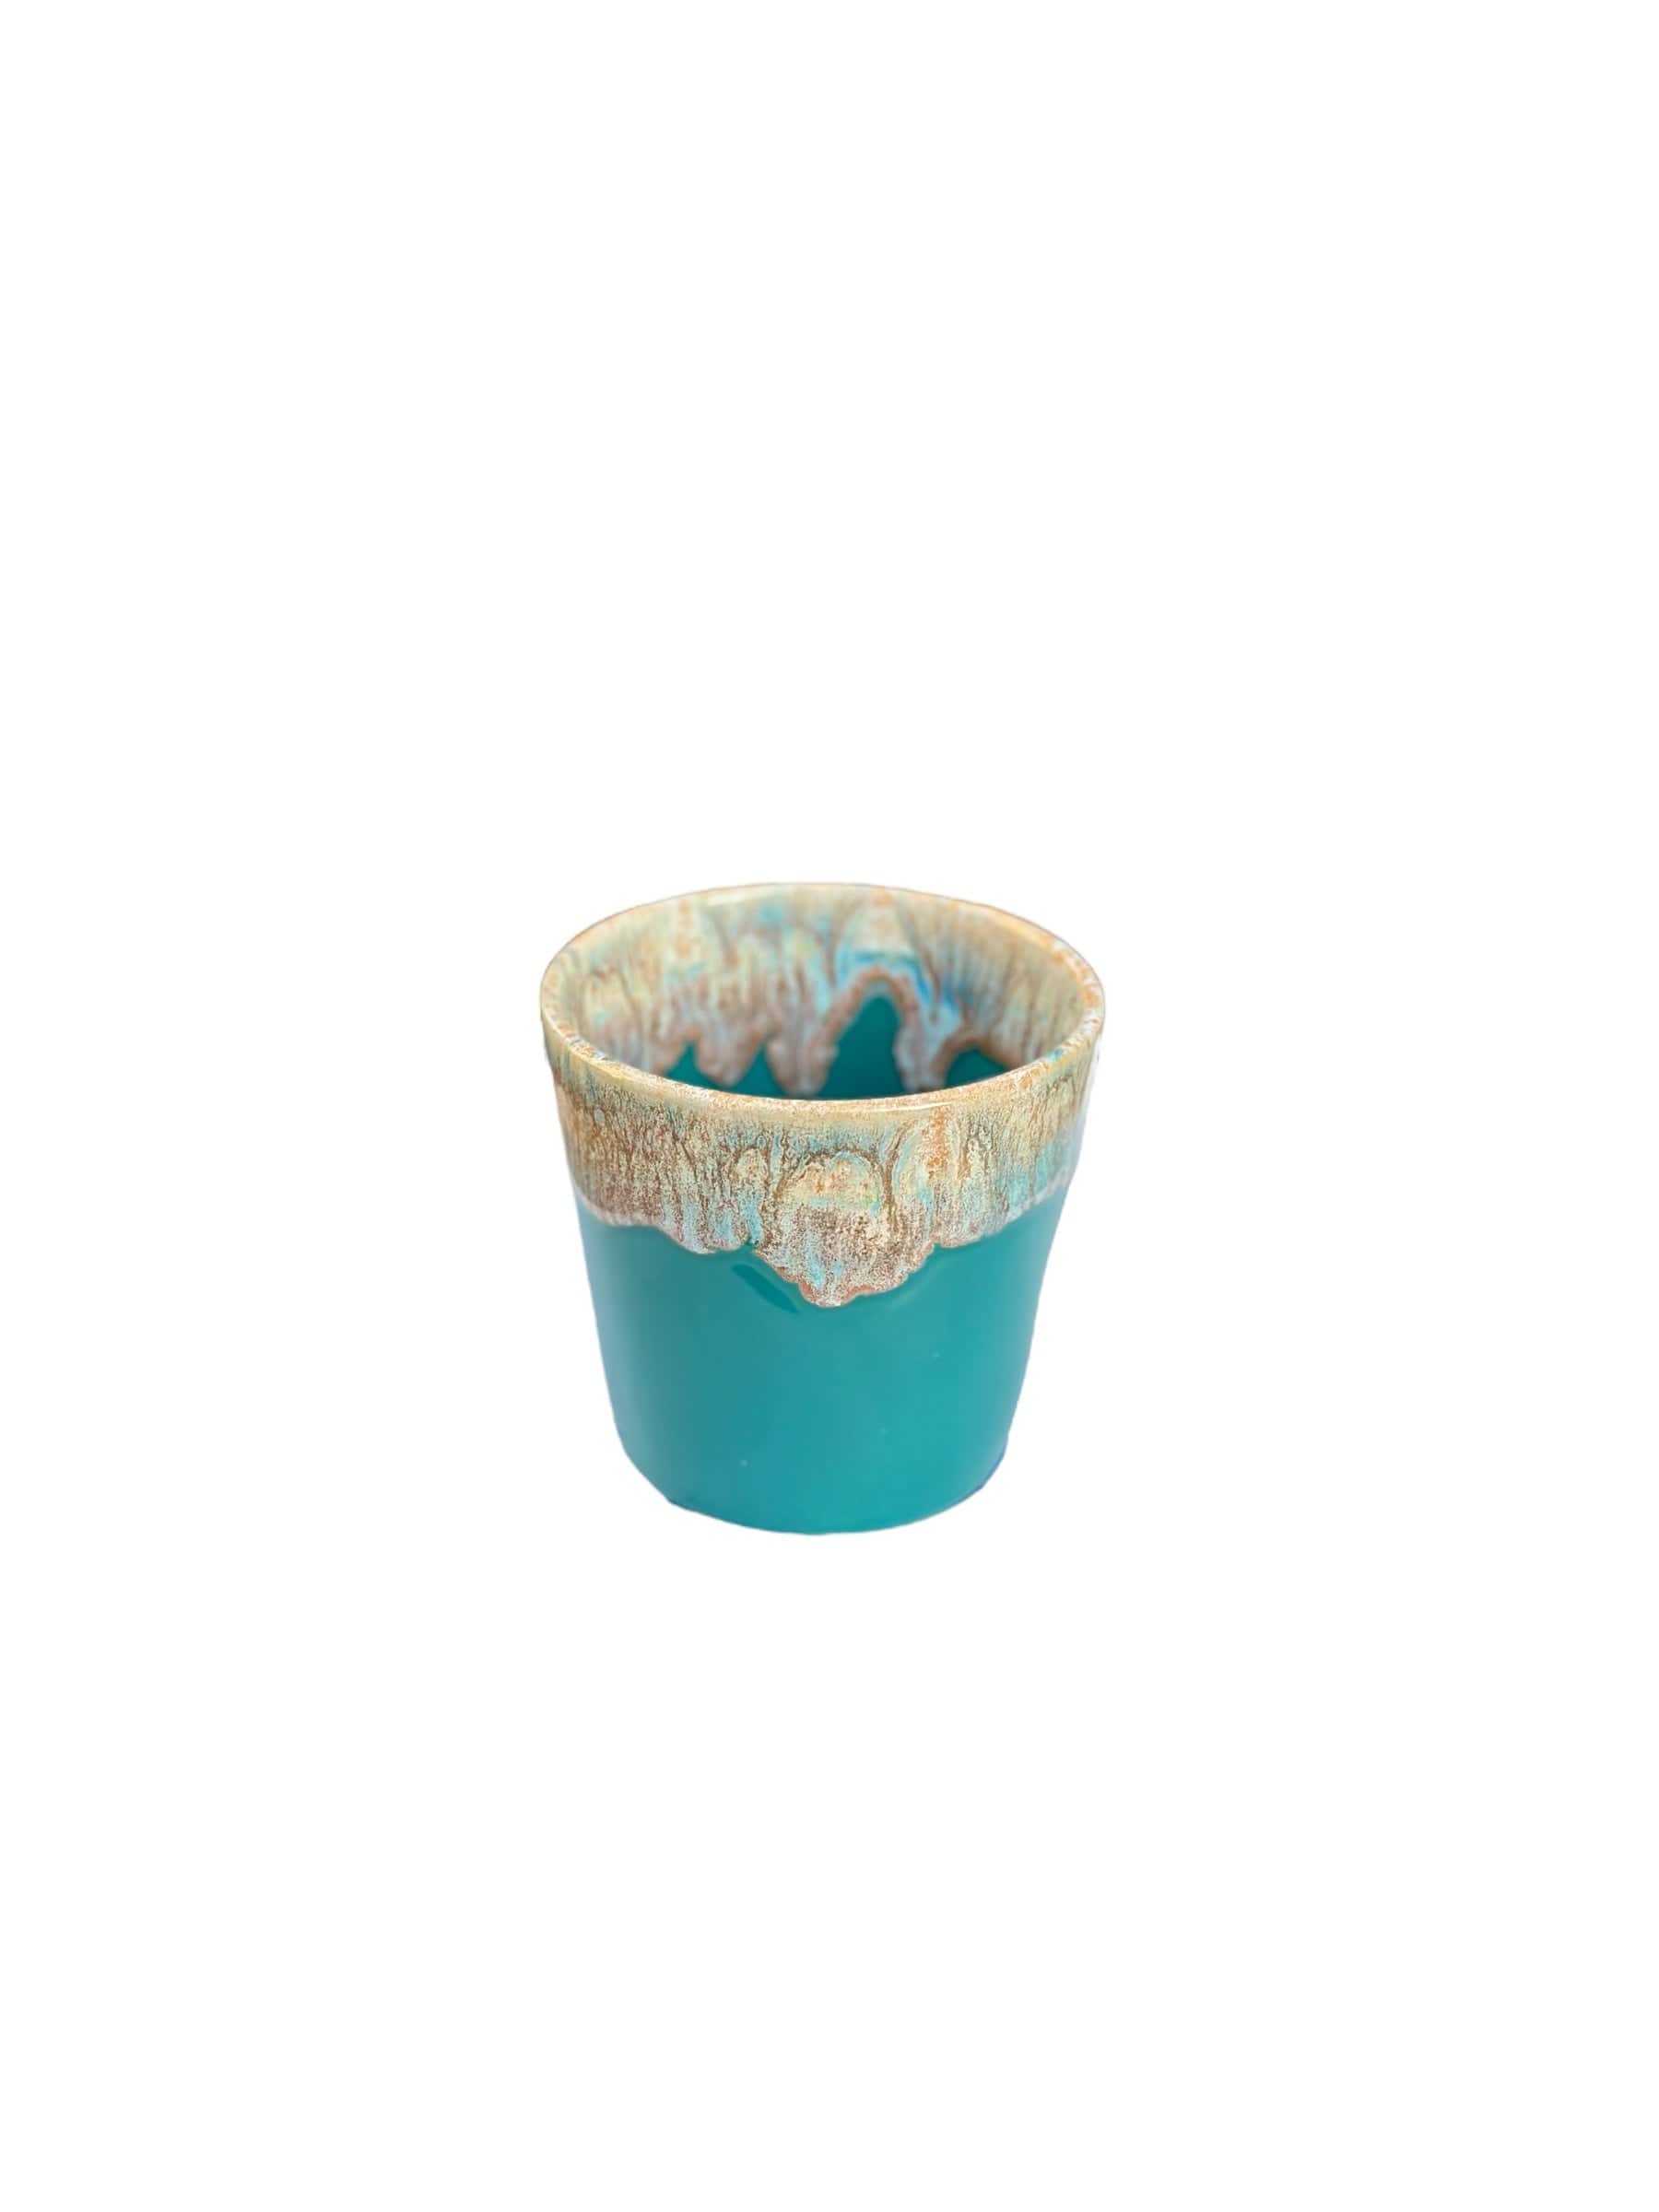 Billede af Costa Nova Grespresso Turkist Keramikkrus - Turquoise